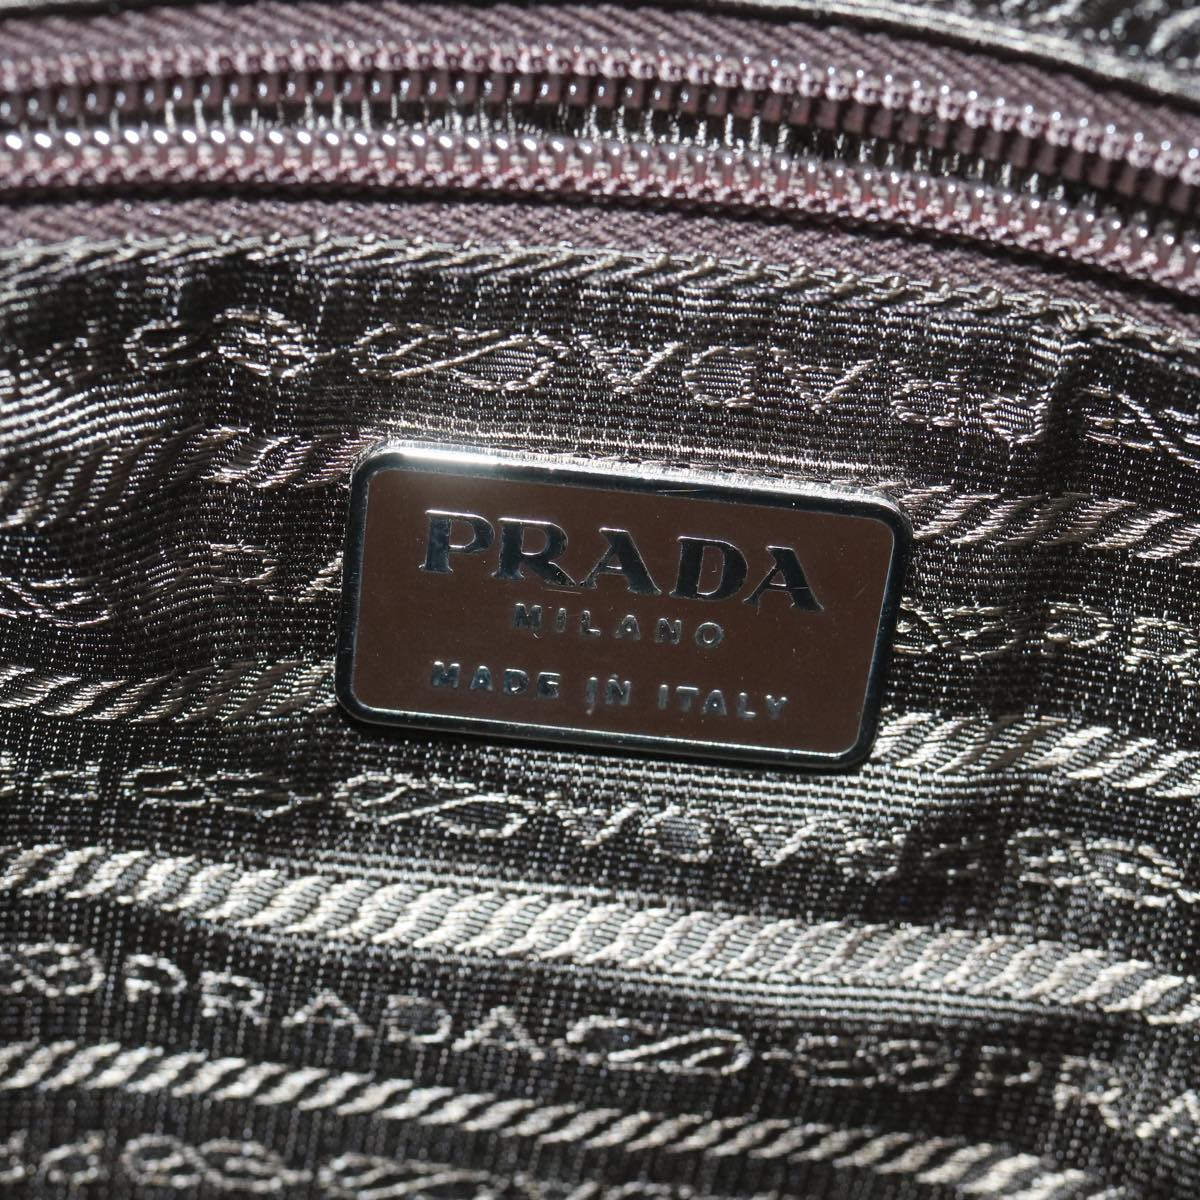 PRADA Hand Bag Nylon Khaki Auth 61415